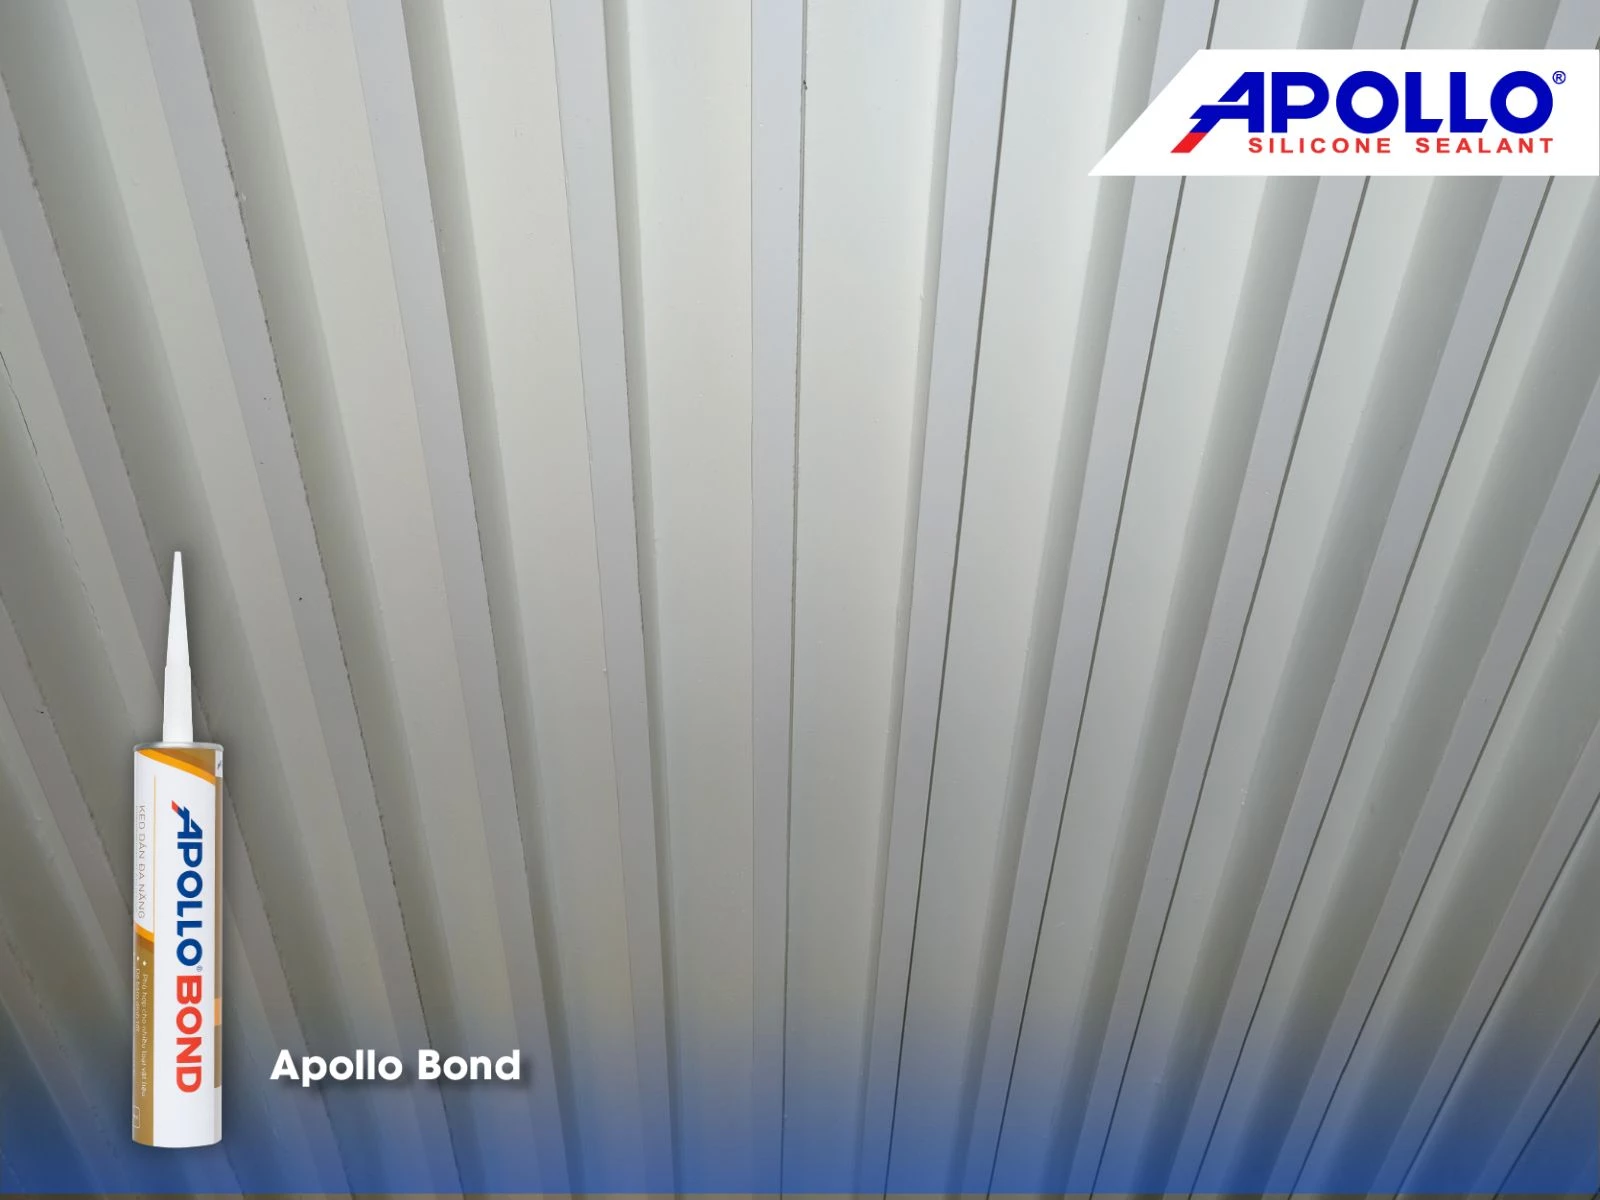 Apollo Bond tạo liên kết chắc chắn giữa tấm ốp và trần nhà, đảm bảo độ bền bỉ cho công trình